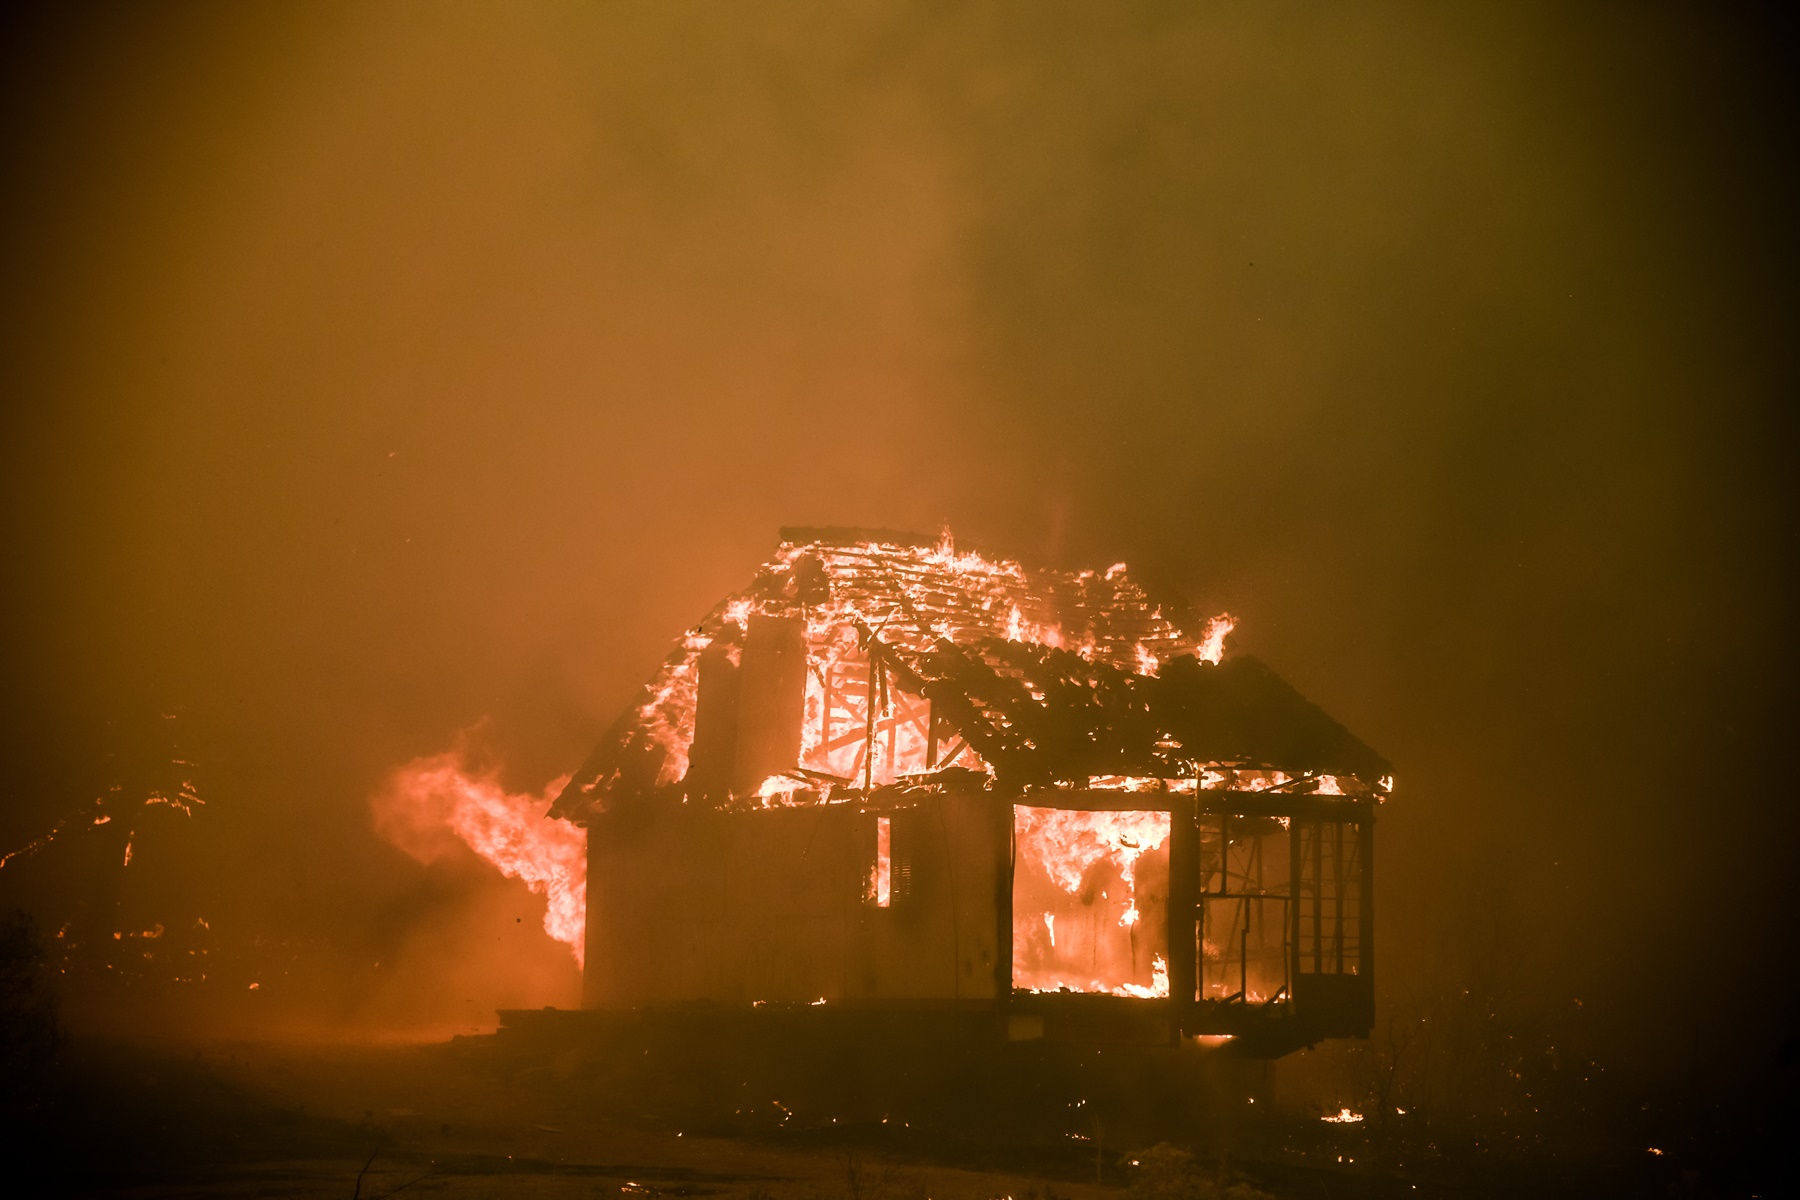 Έλληνας πιλότος Beriev – Βίλια: Όσο επιχειρούσε, η φωτιά απειλούσε το σπίτι του